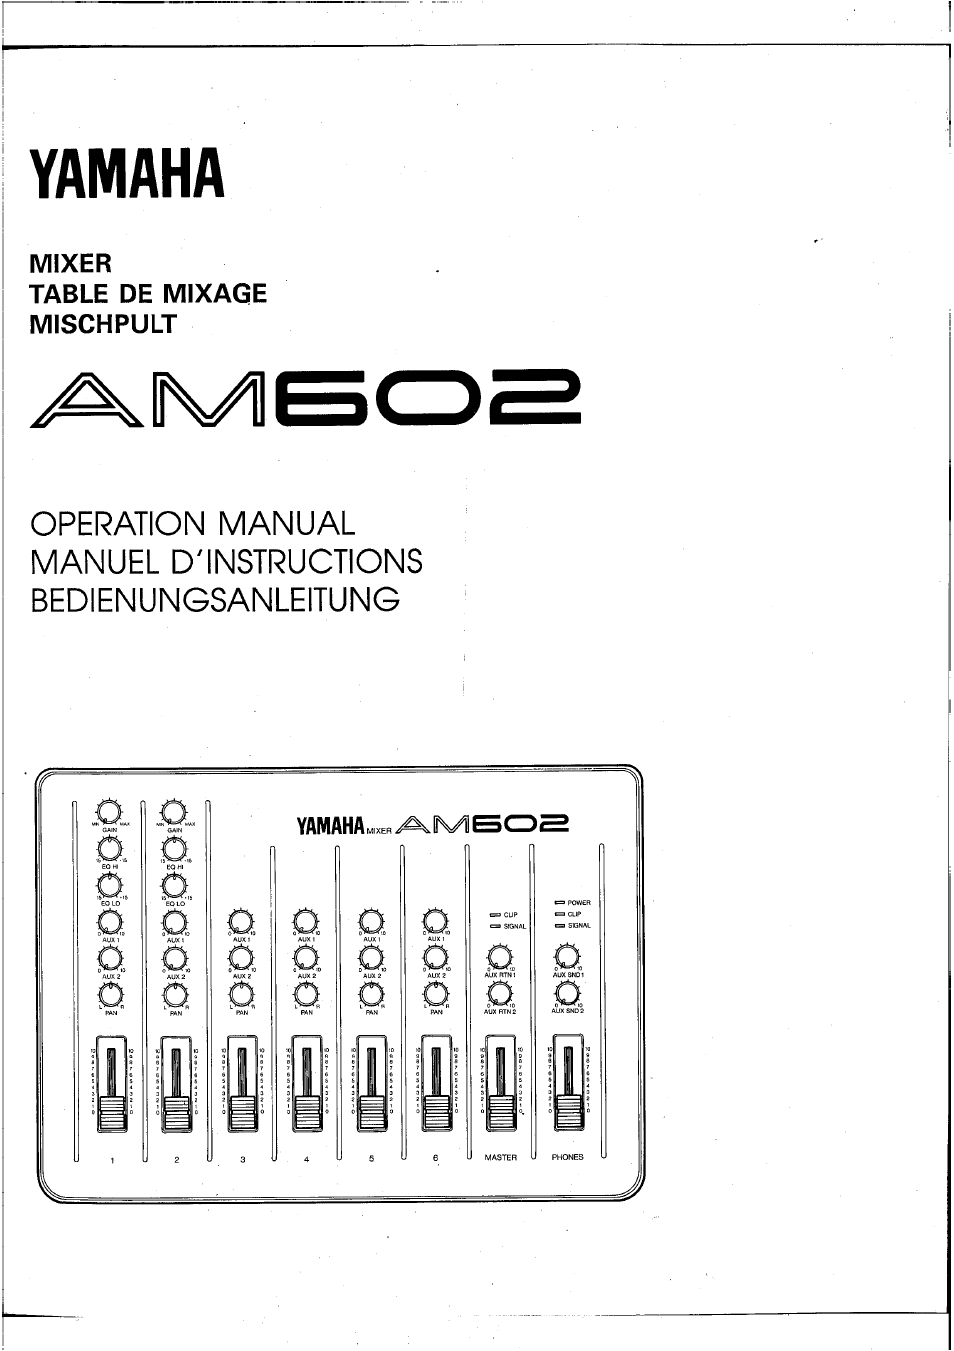 AM602